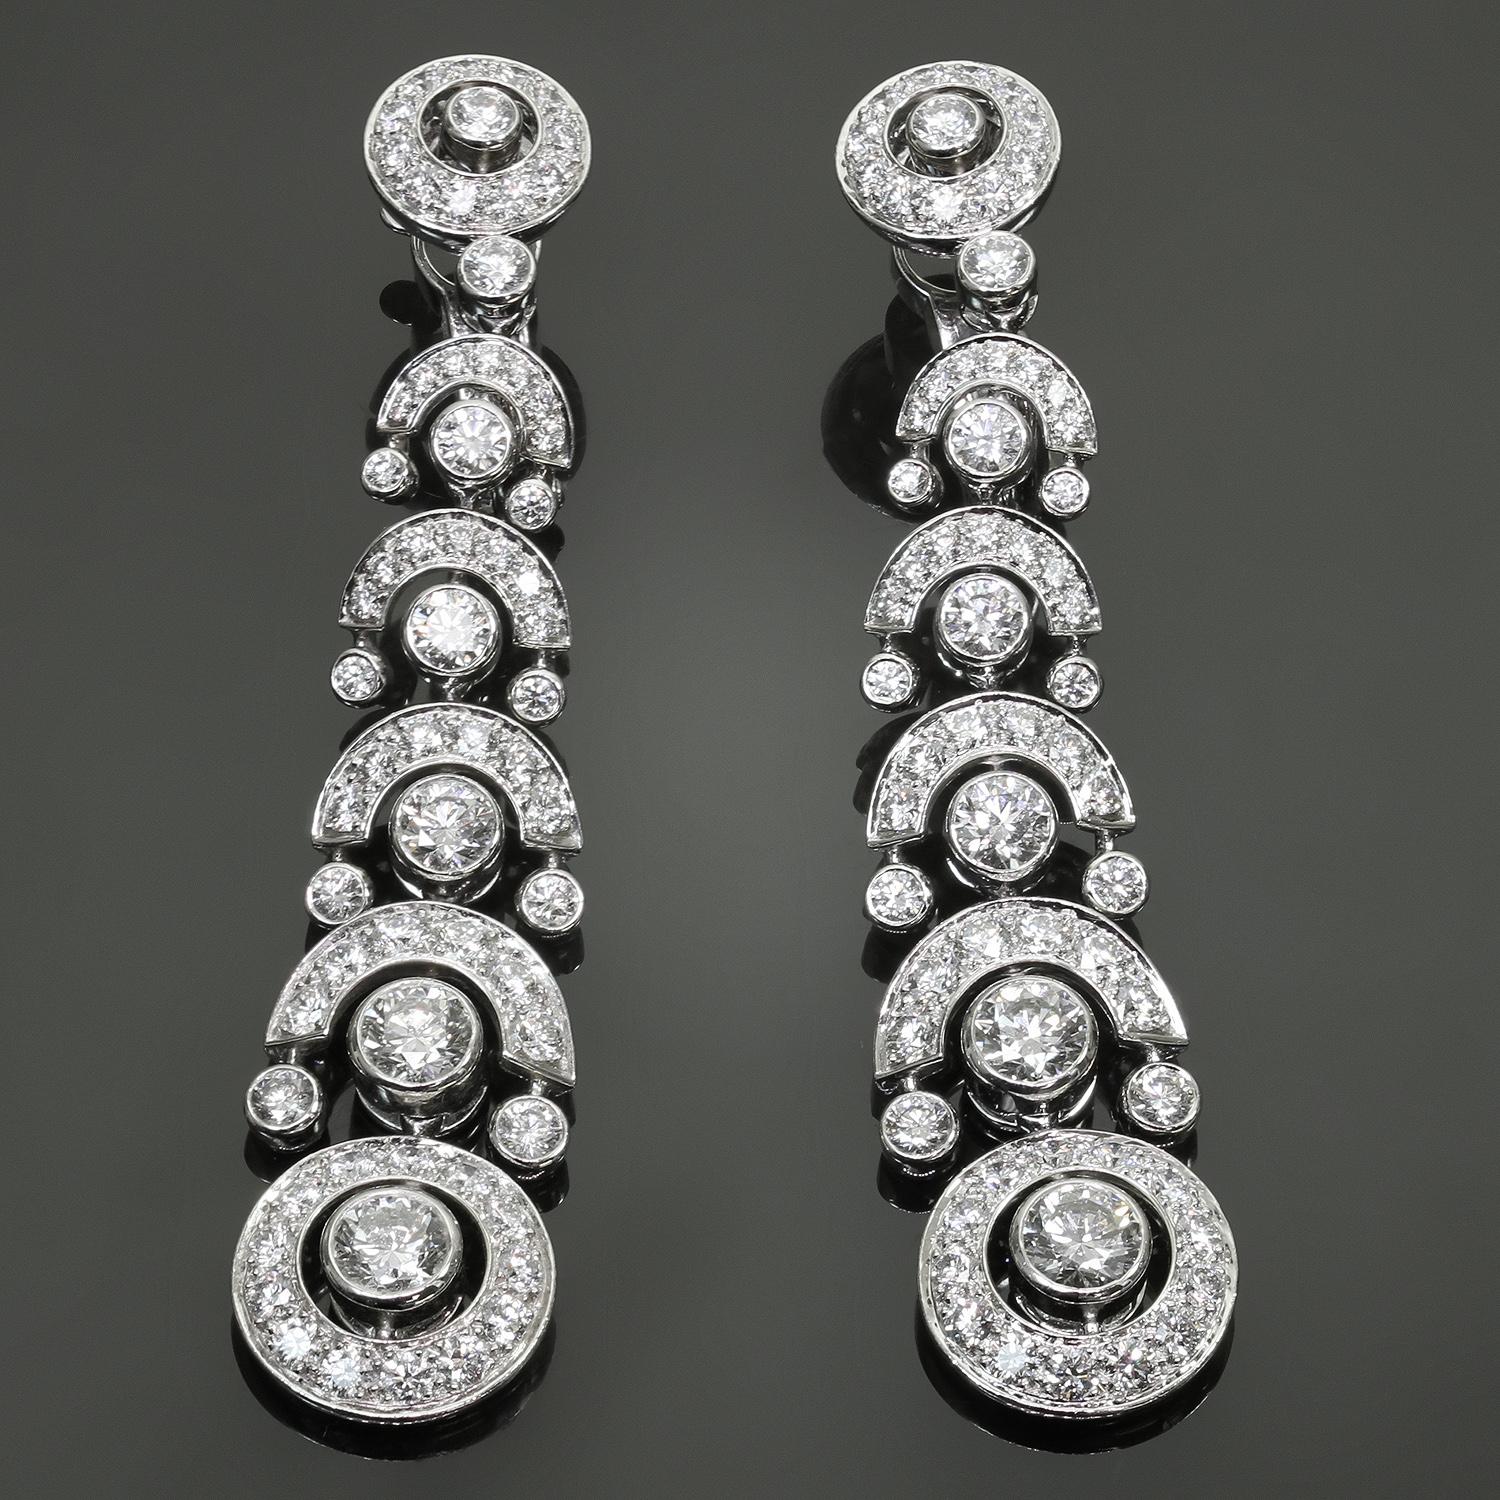 Diese prächtigen, modernen und authentischen Cartier-Kronleuchter-Ohrringe sind aus Platin gefertigt und mit runden, brillanten D-E-F VVS1-VVS2 Diamanten mit einem geschätzten Gewicht von 4,80 - 5,0 Karat besetzt. Hergestellt in Frankreich um 2021.